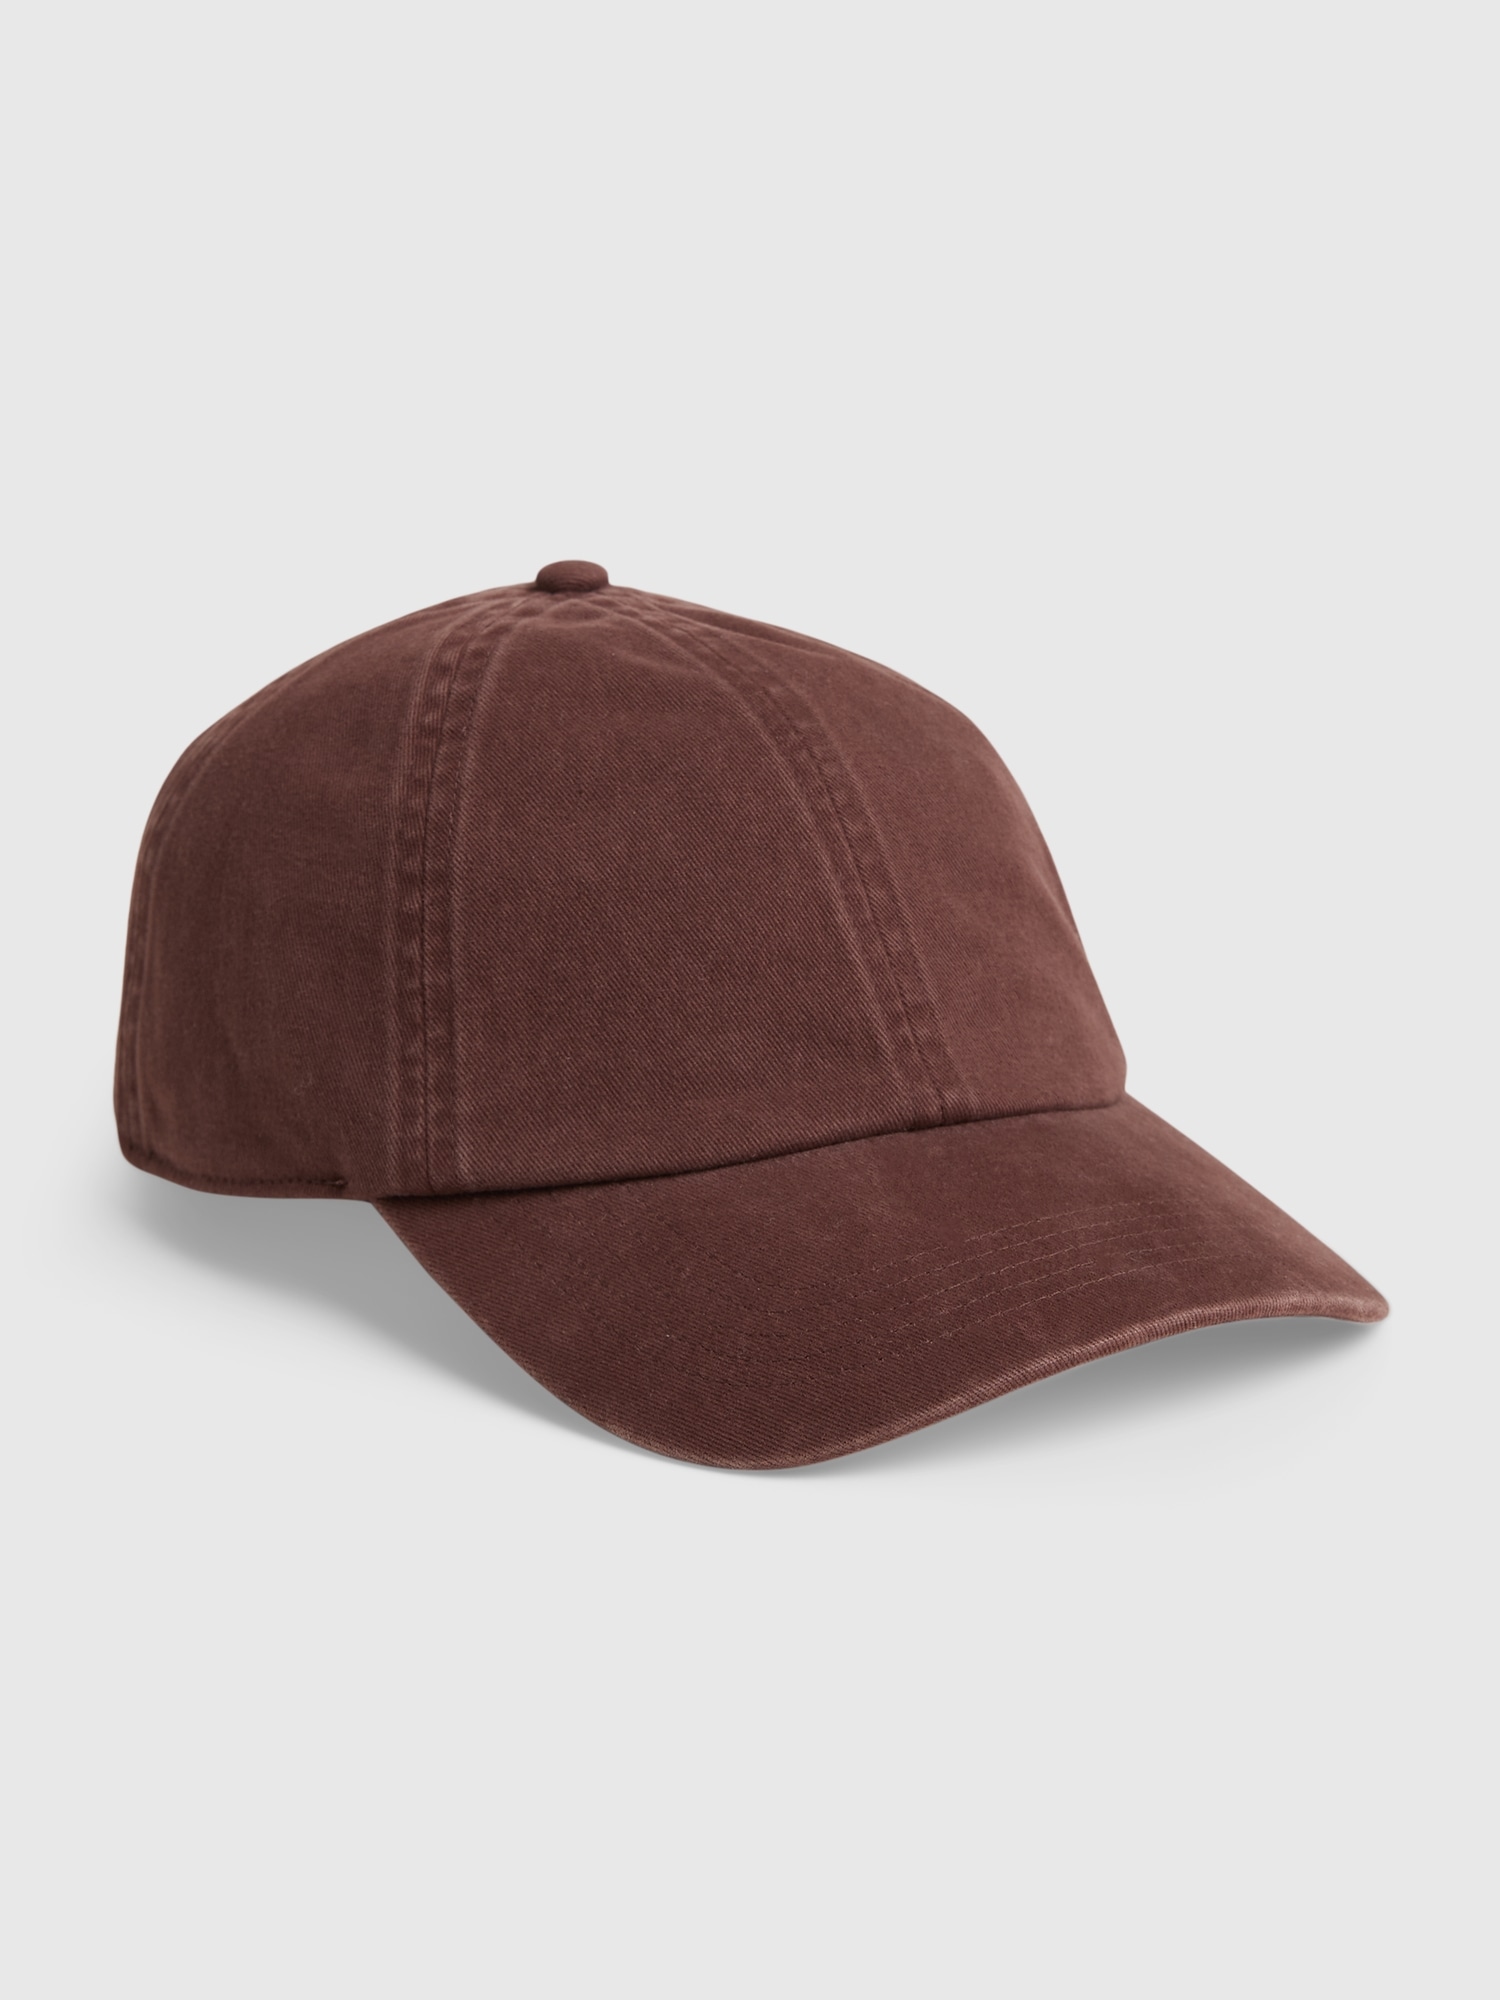 Gap Organic Cotton Washed Baseball Hat brown. 1